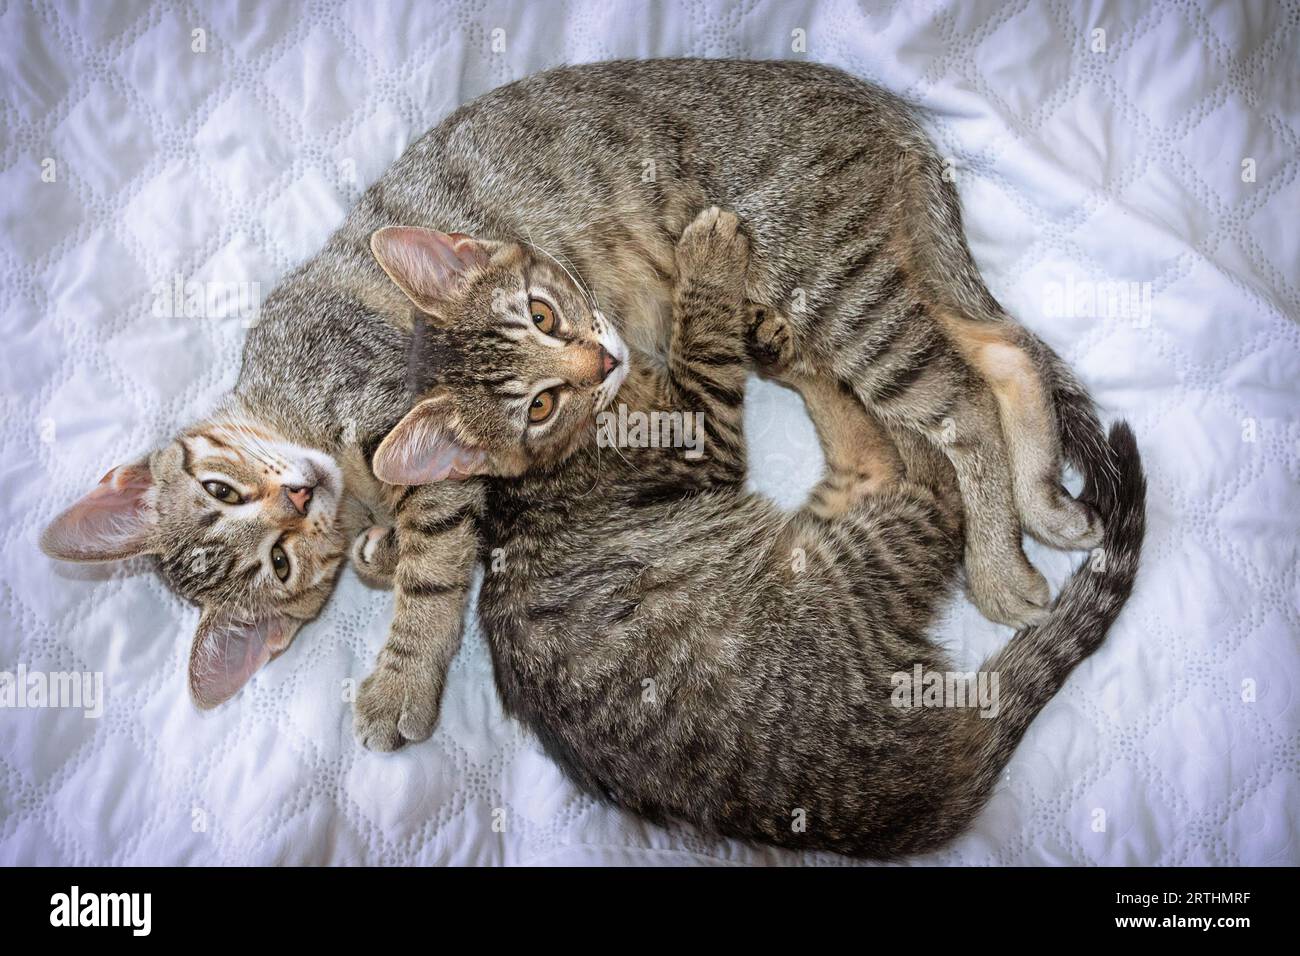 deux chatons mignons couchés ensemble sur une couverture blanche Banque D'Images